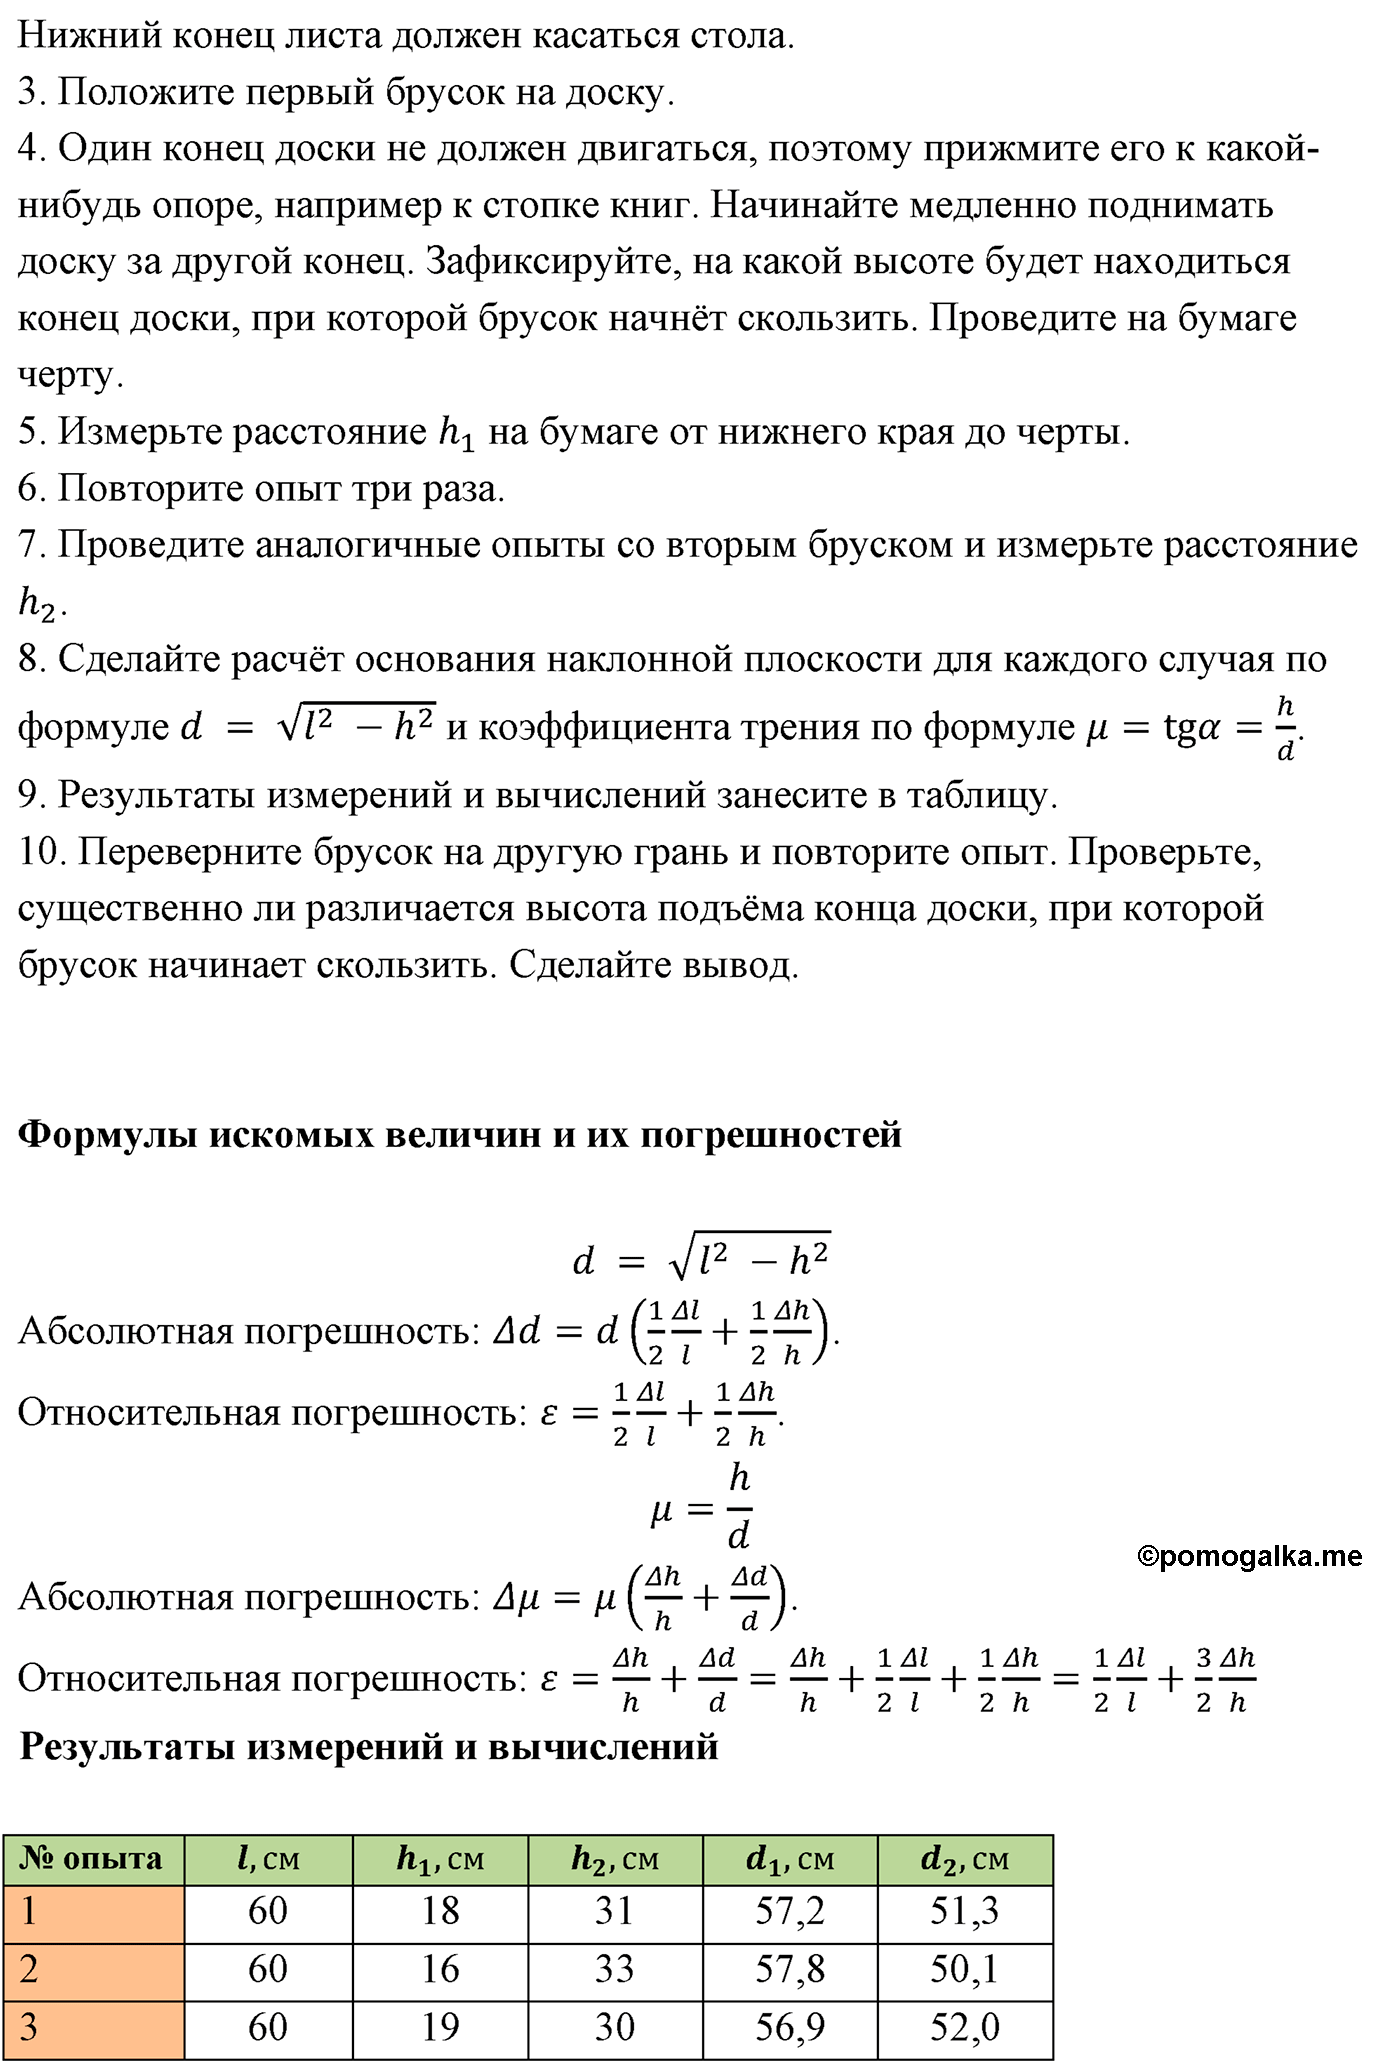 лабораторная работа №3 физика 10 класс Микишев